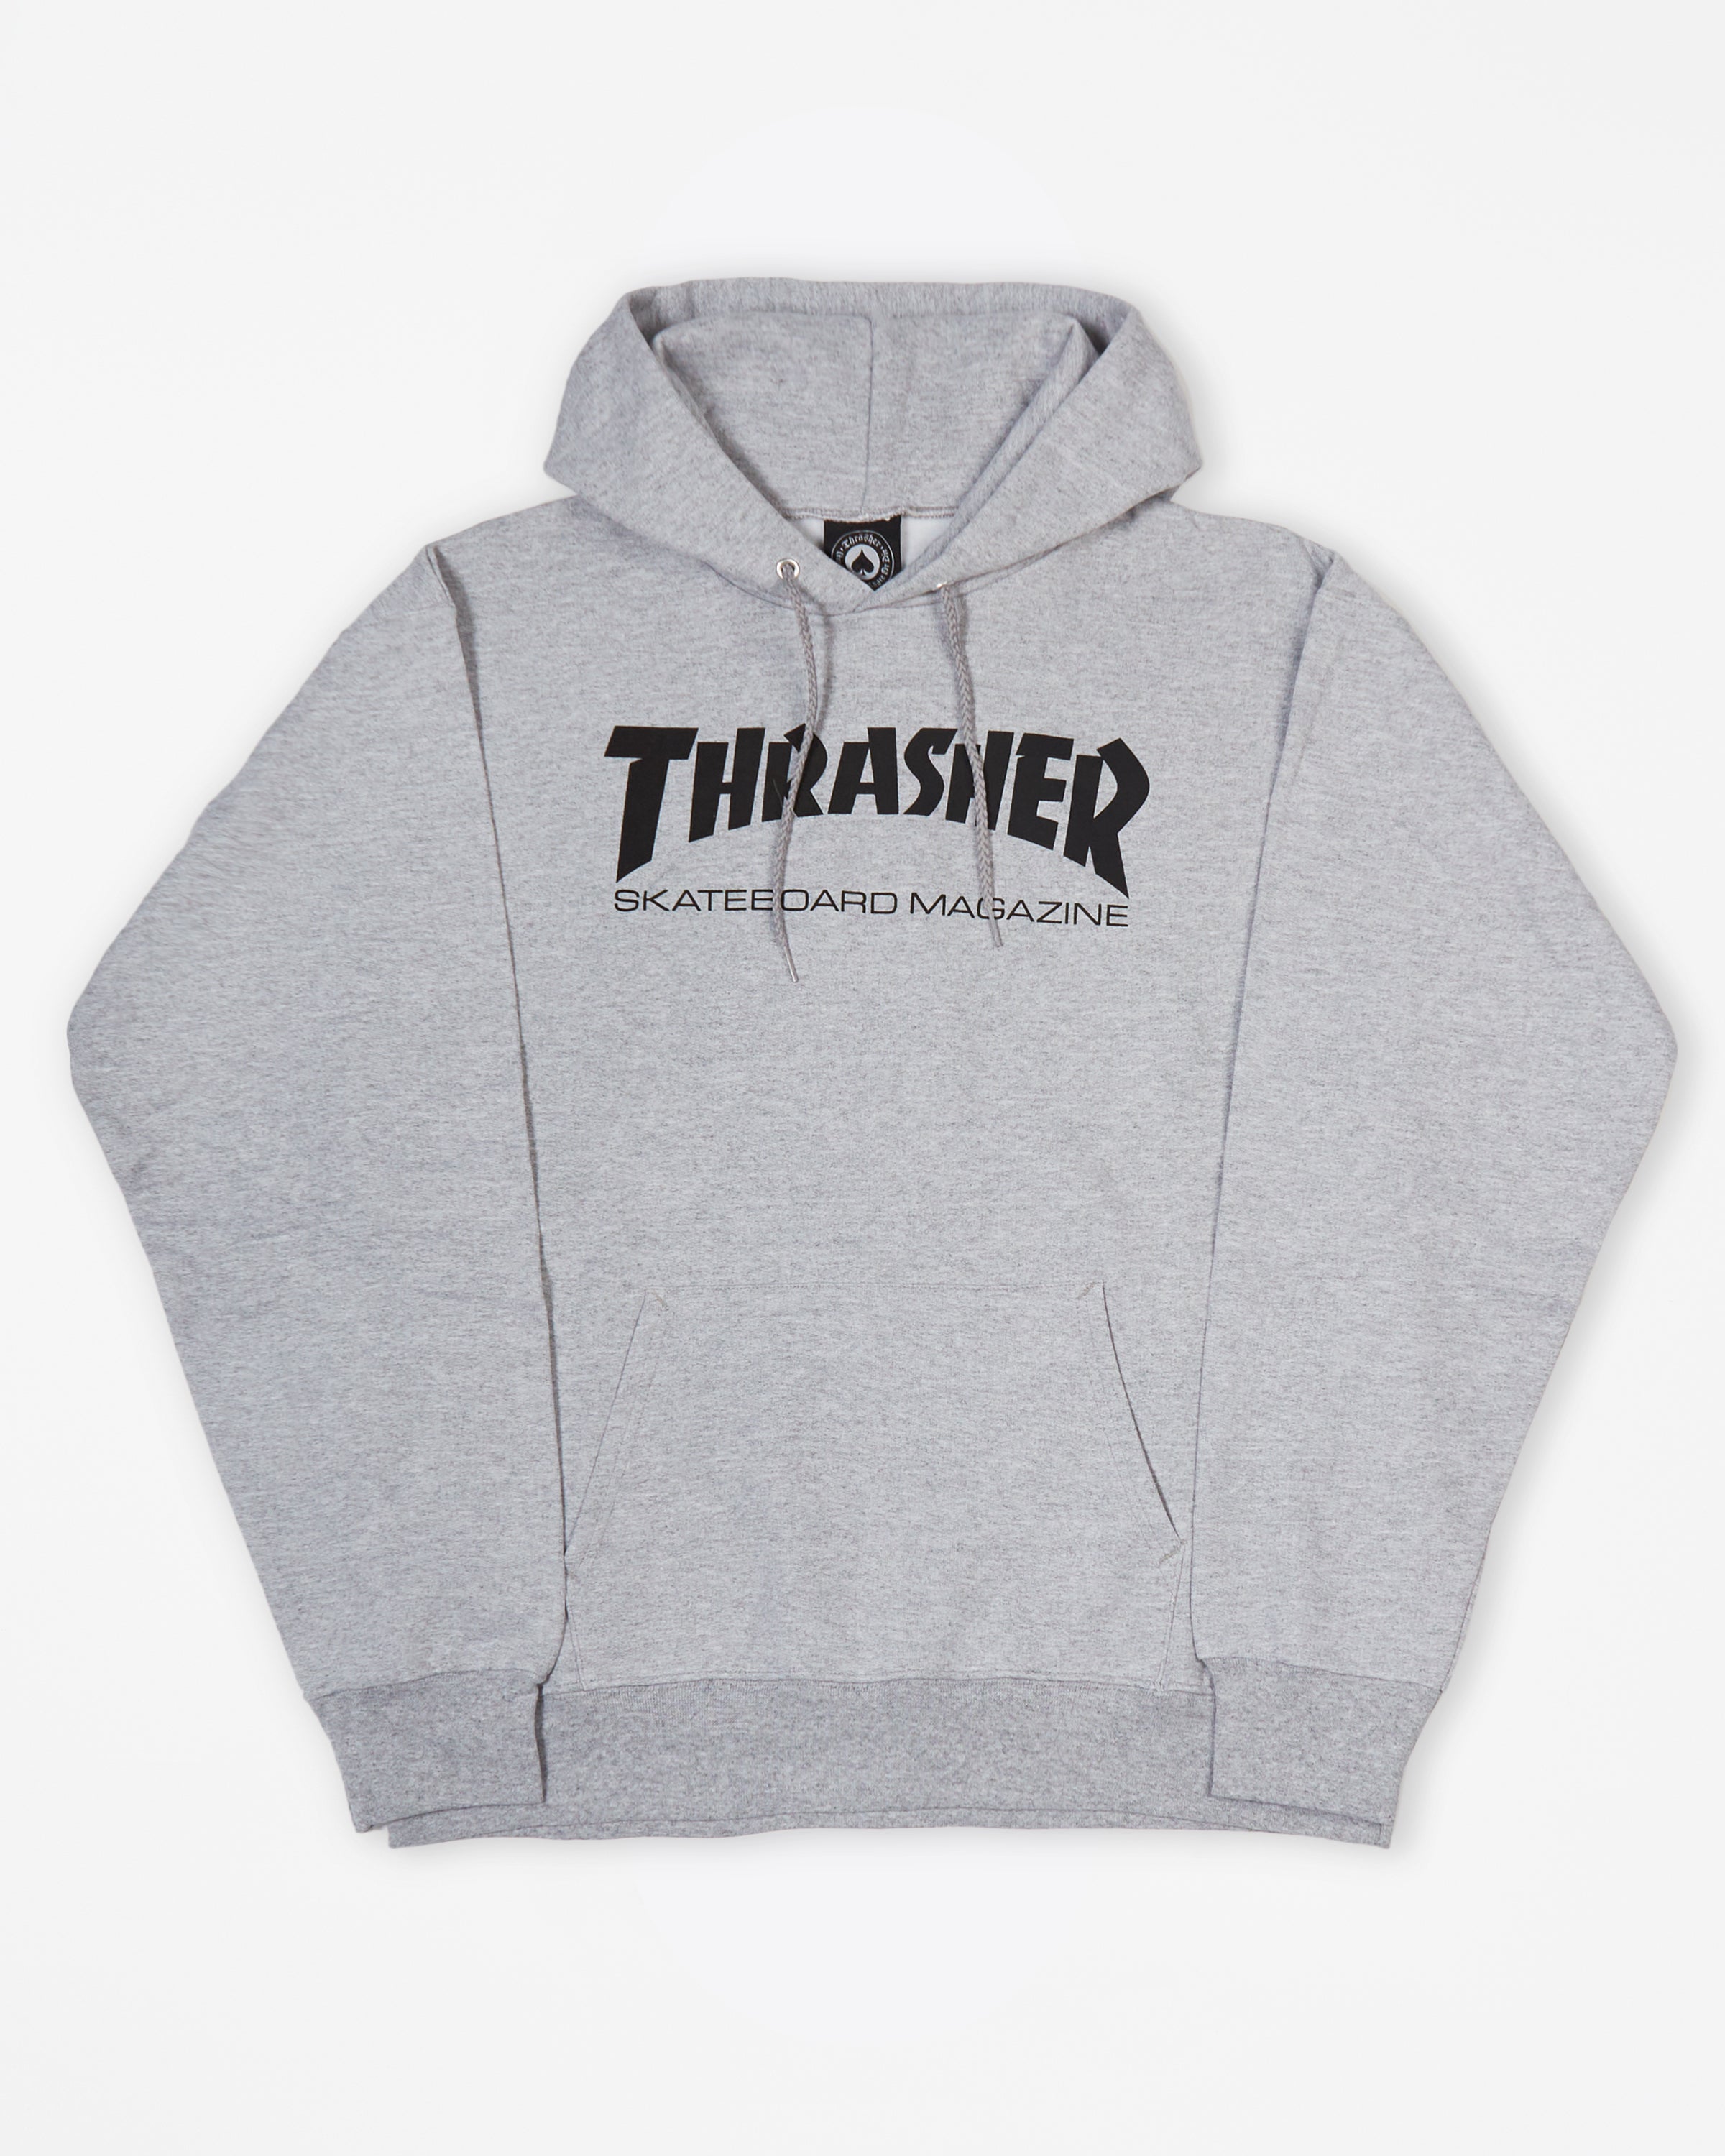 Thrasher - Thrasher Magazine Grey Hoodie